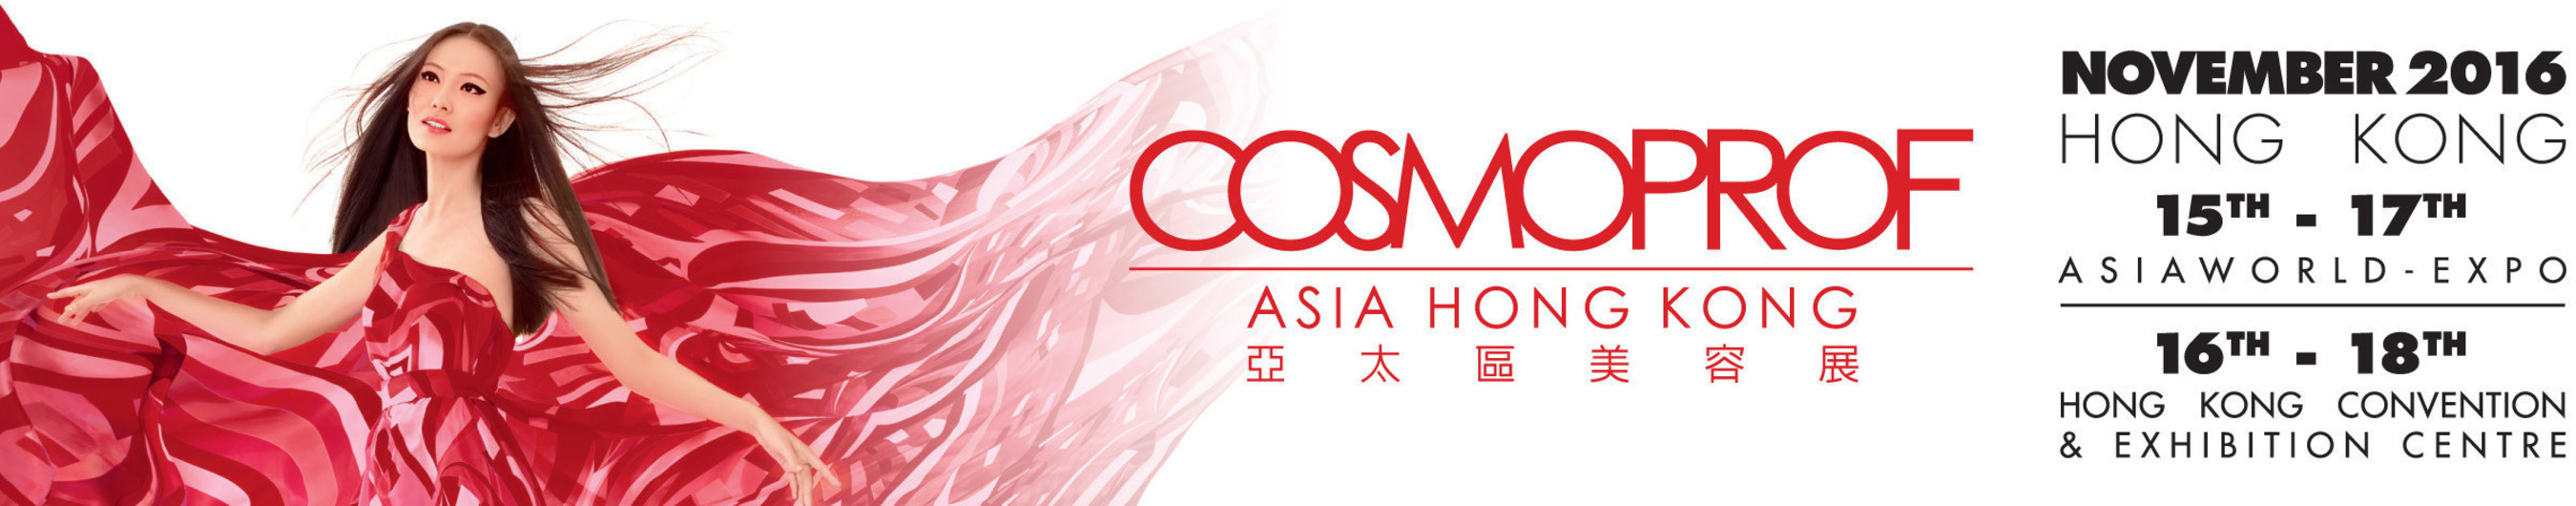 Cosmoprof Asia 2016